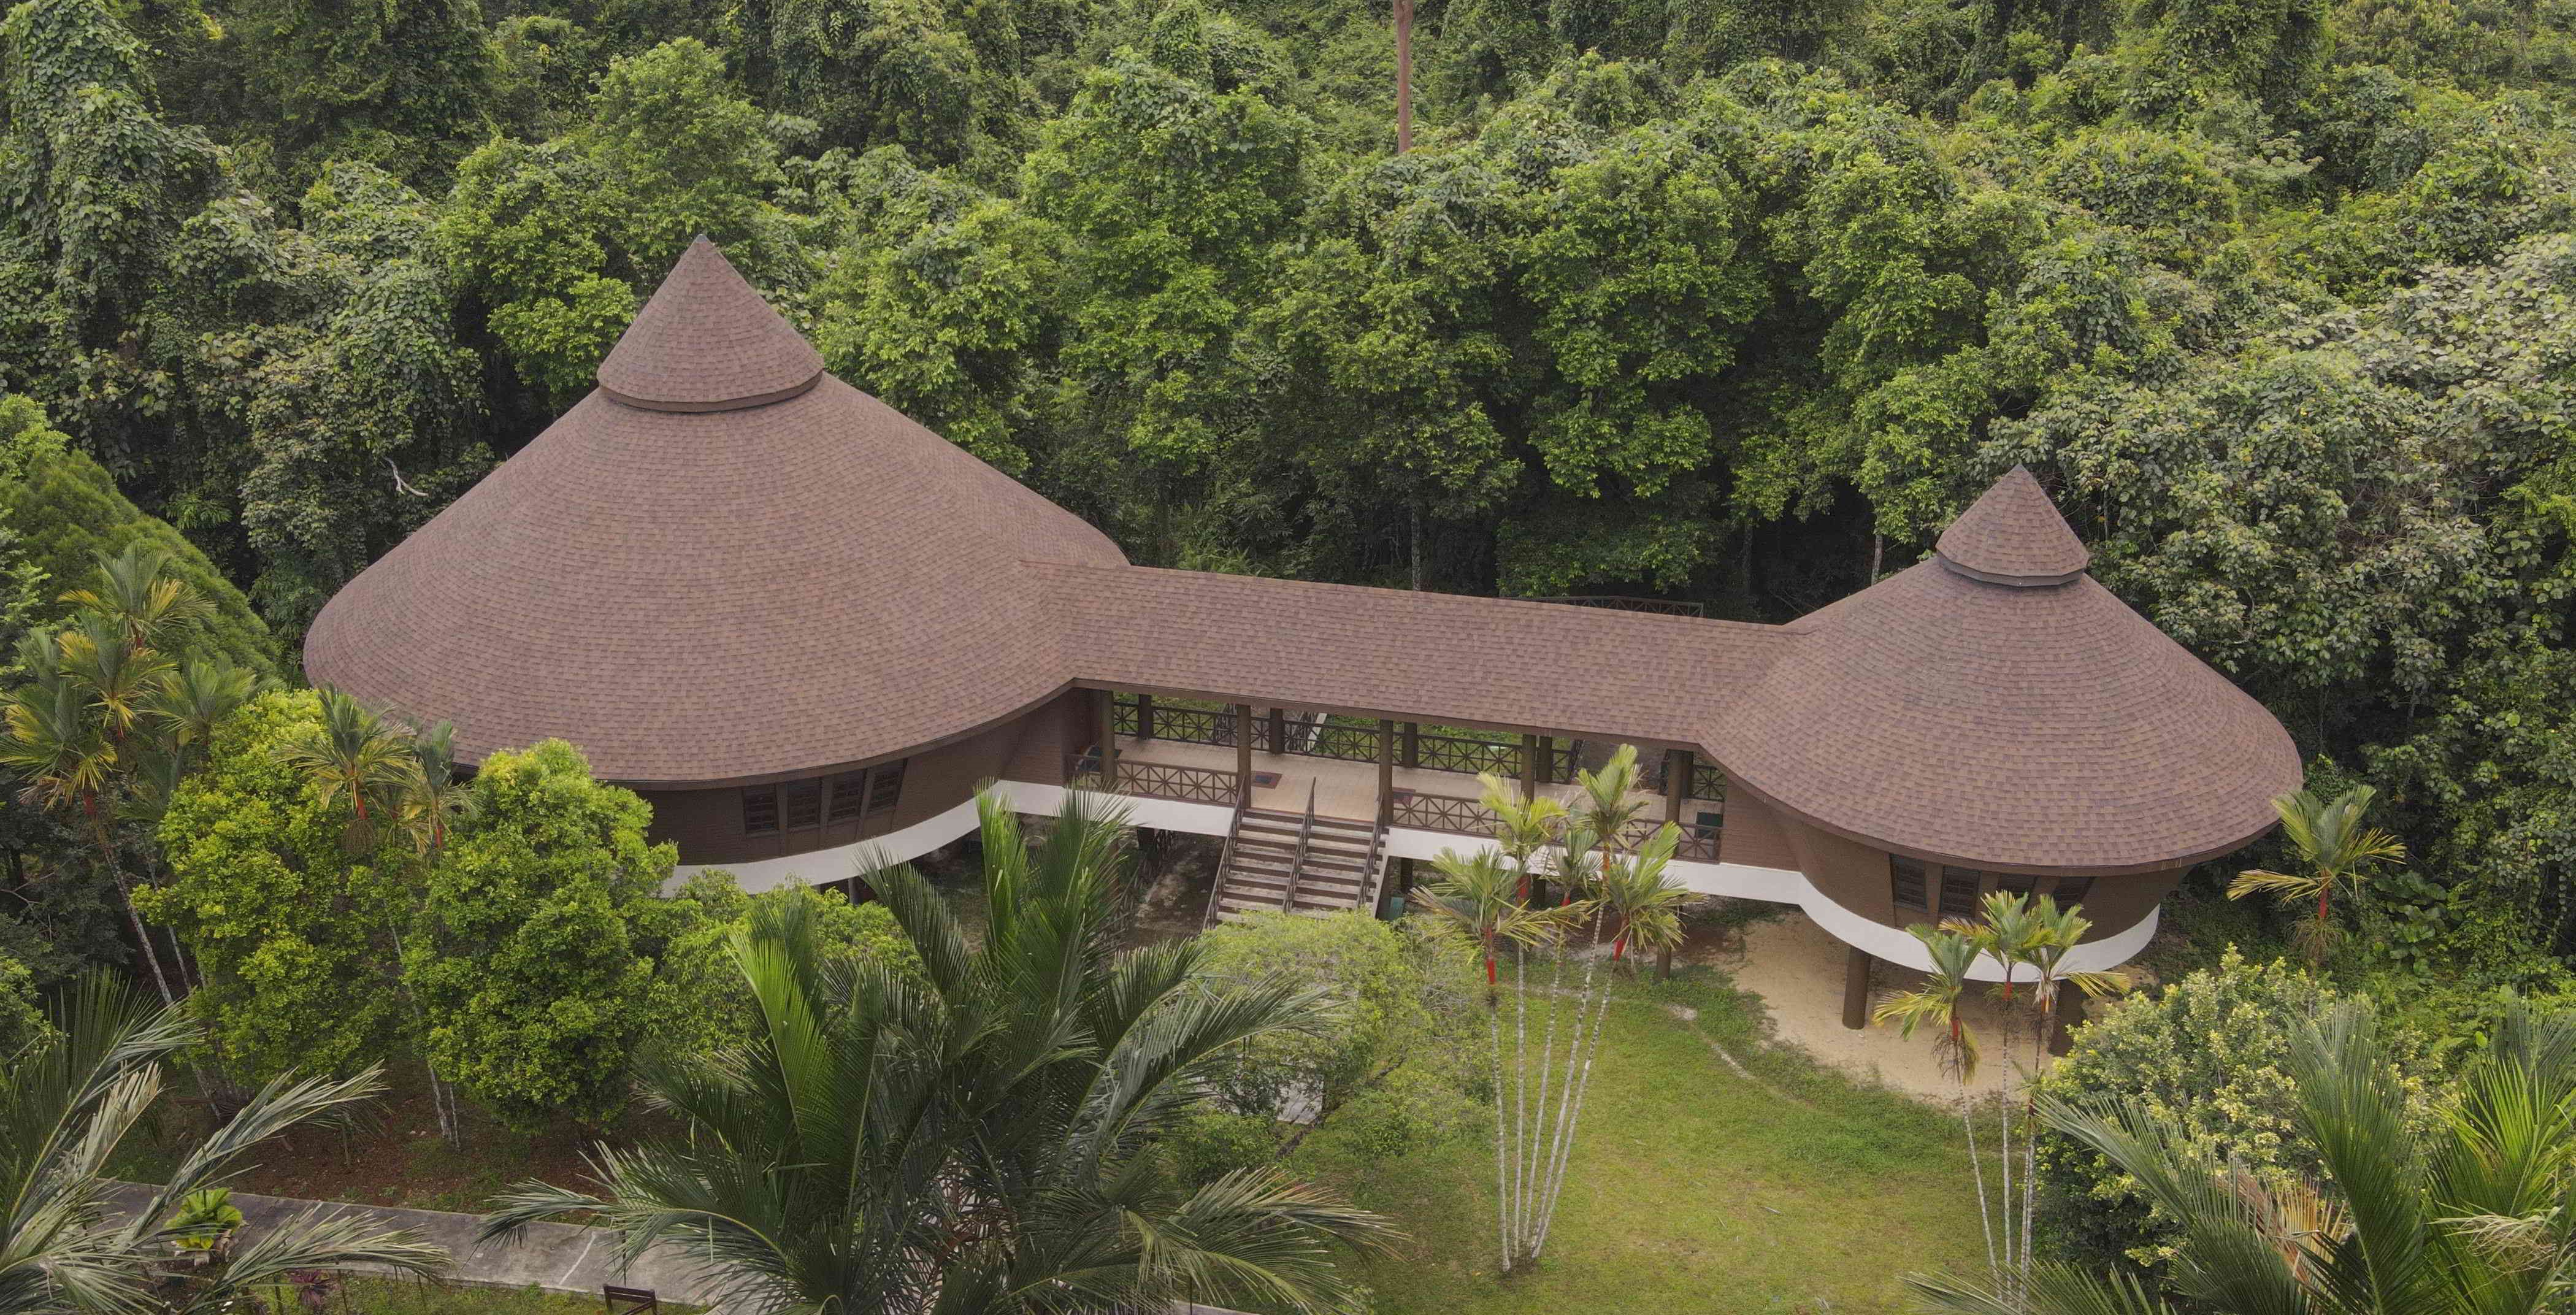 Sama Jaya Nature Reserve